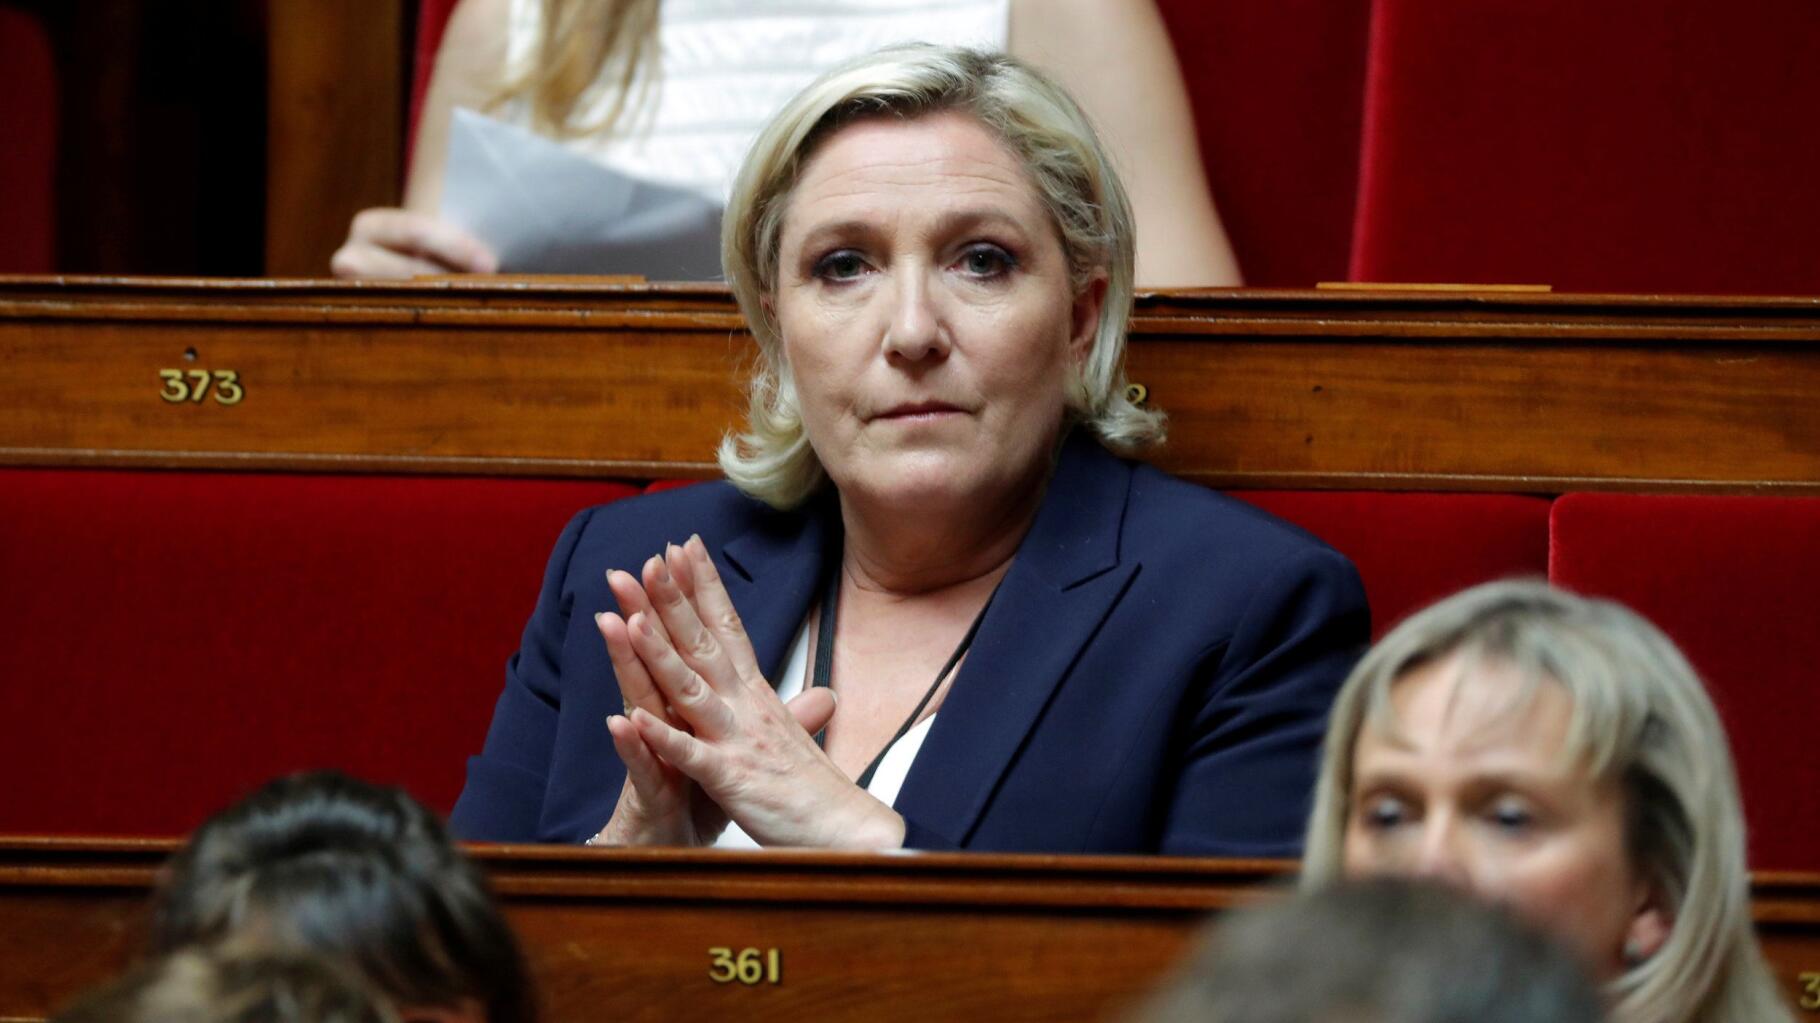   IVG dans la Constitution : Emmanuel Macron salué par la classe politique, Marine Le Pen parle « d’inutilité »  